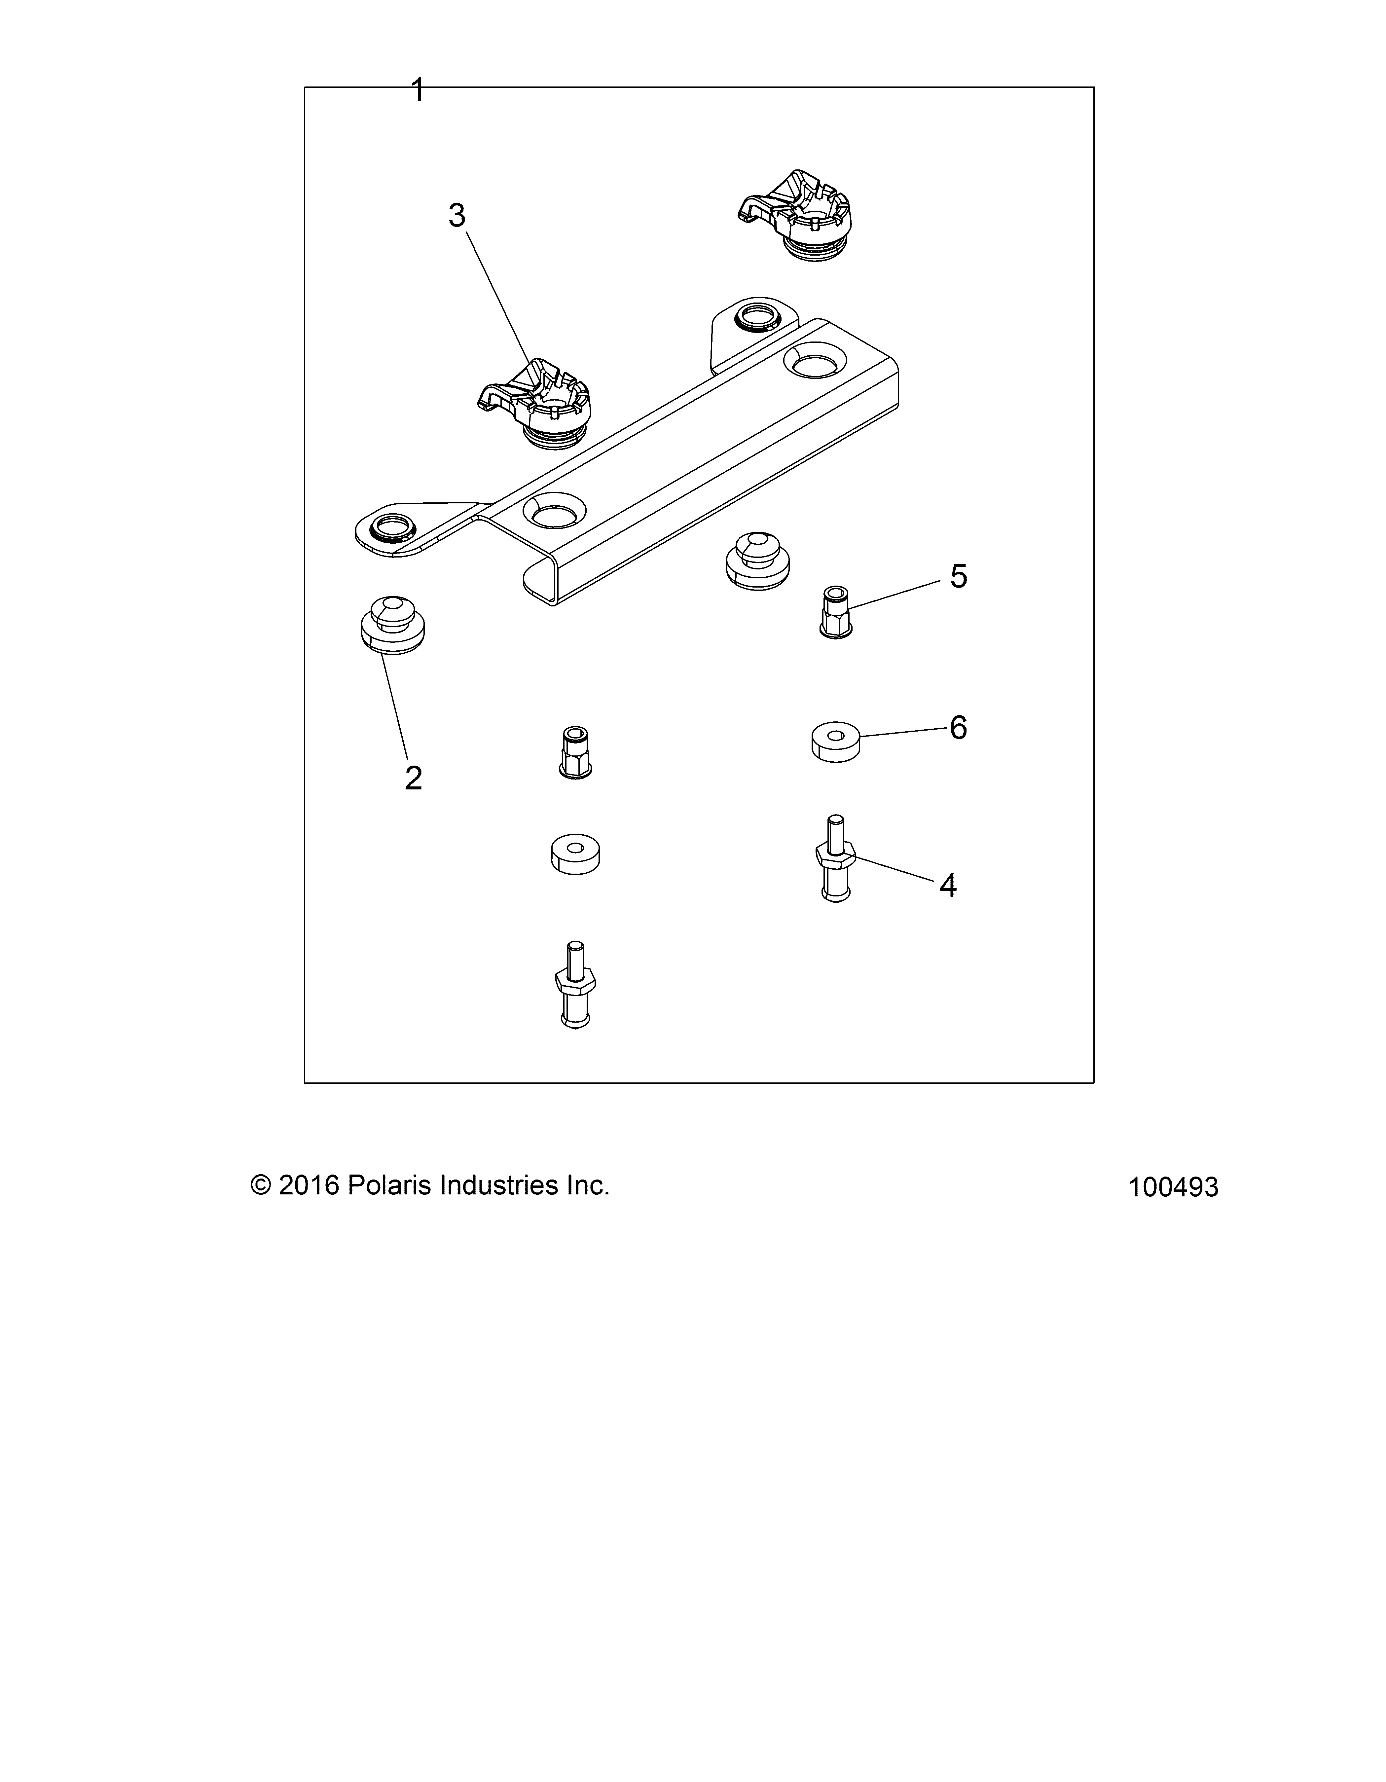 Foto diagrama Polaris que contem a peça 1020423